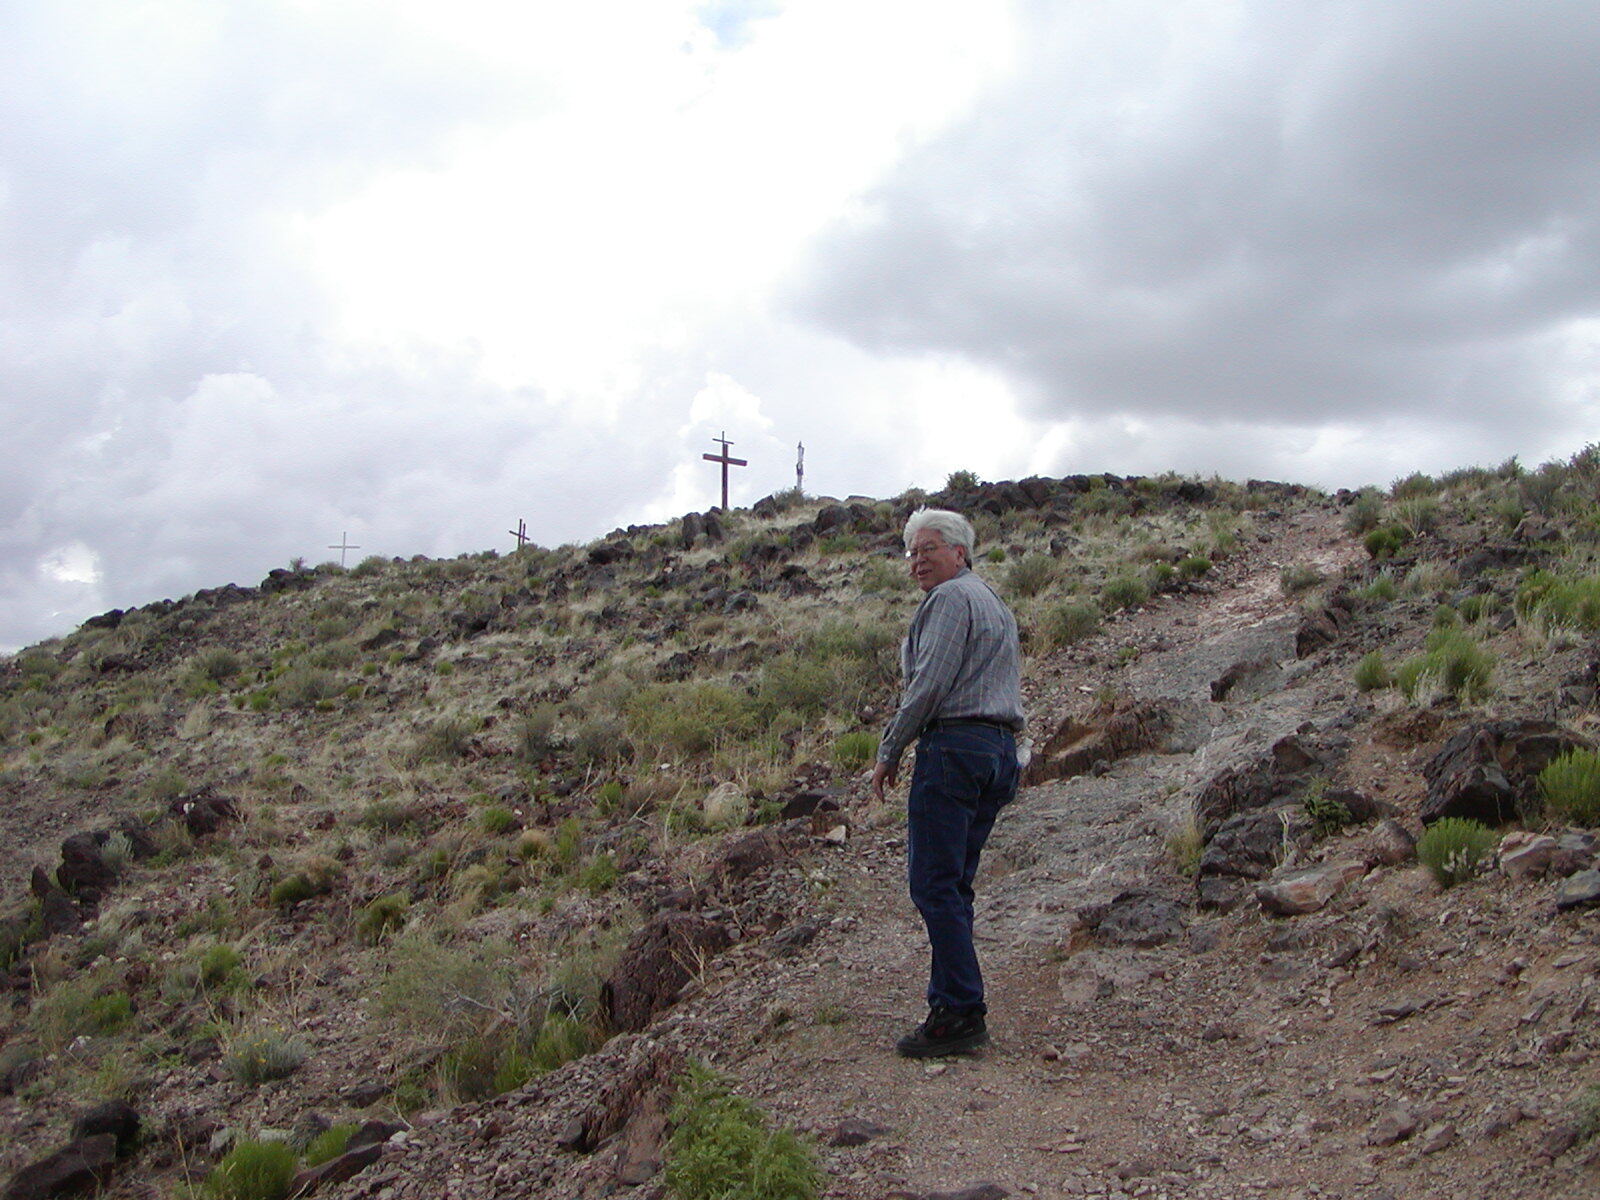 A man hikes the trail leading to El Cerro de Tome in Valencia County, NM